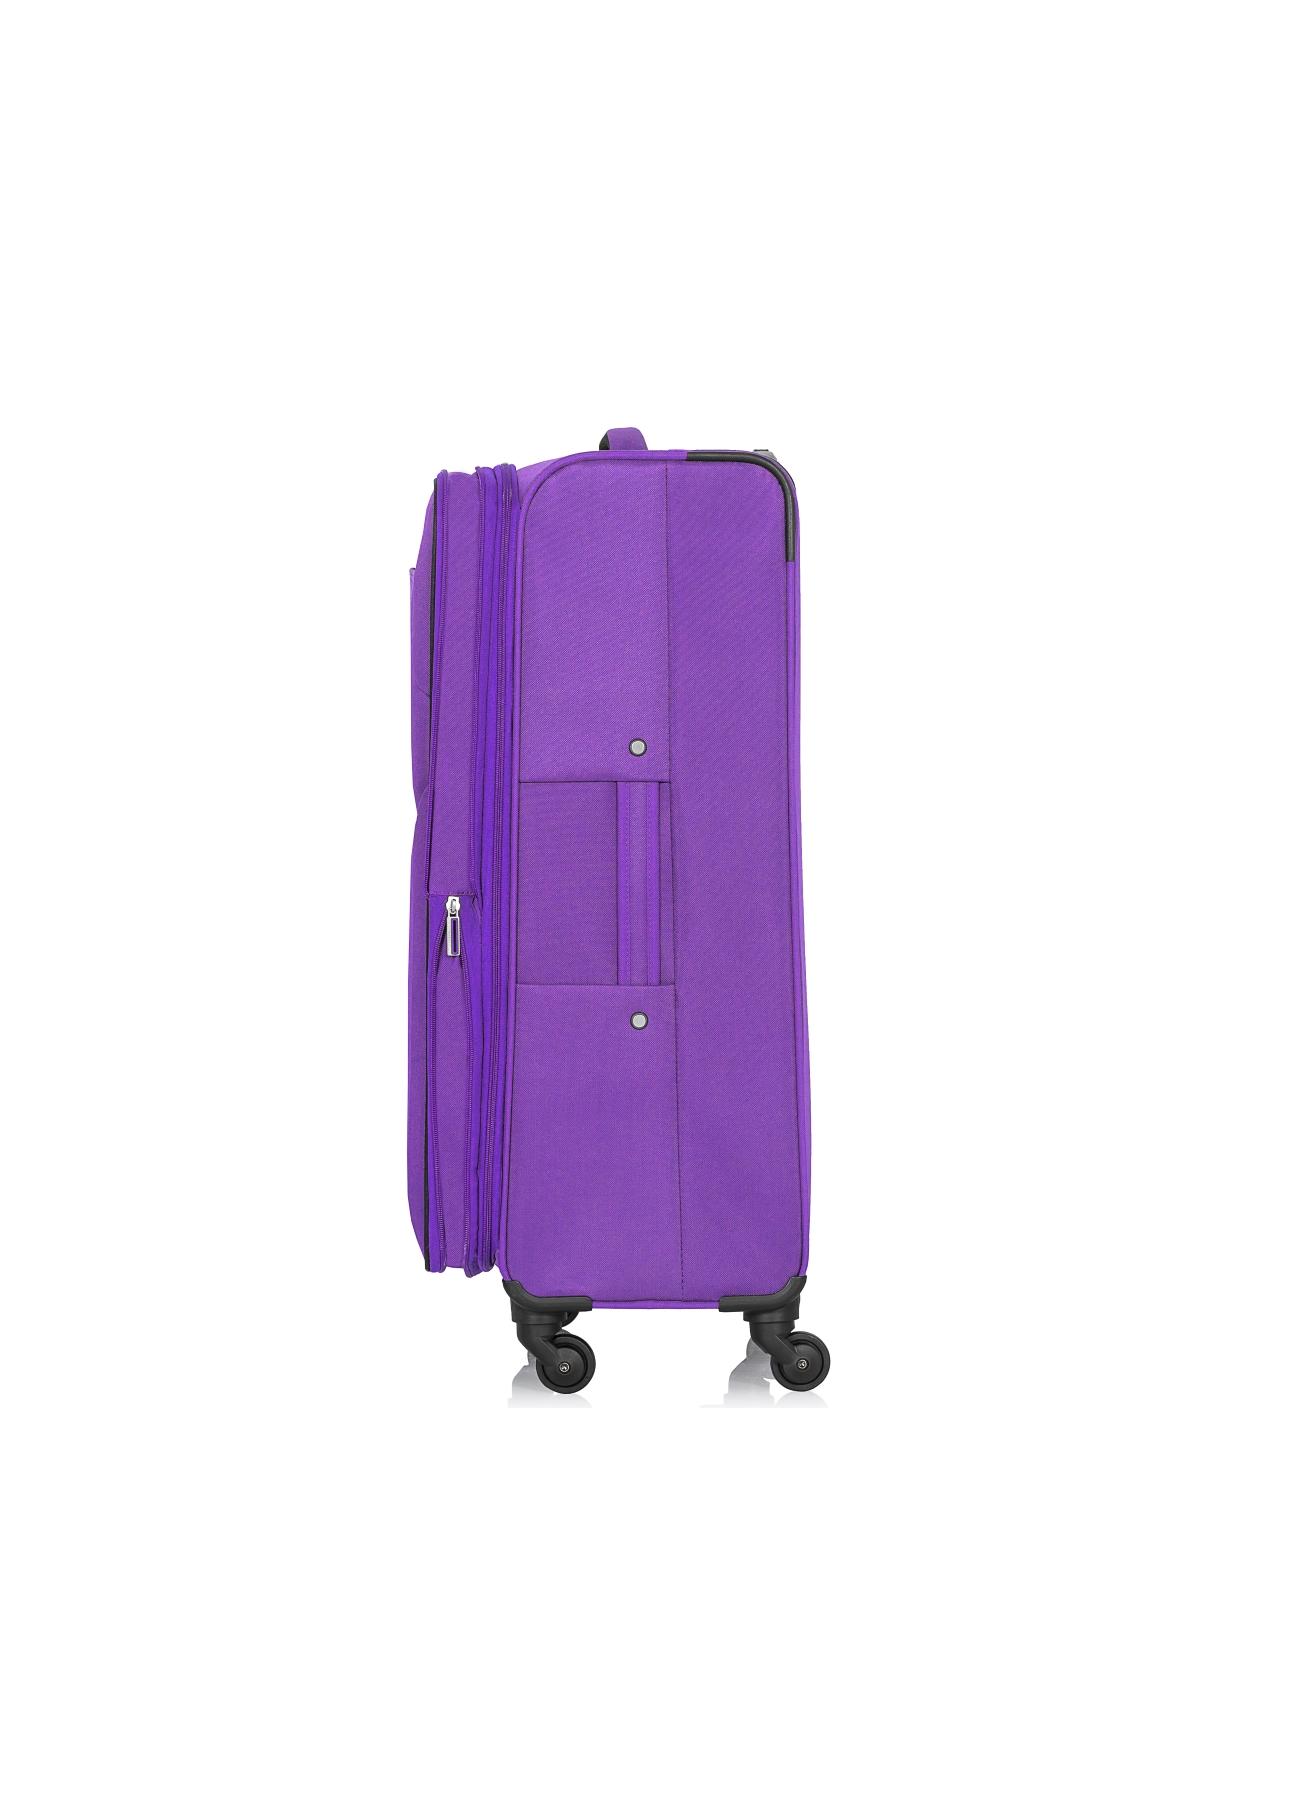 Średnia walizka na kółkach WALNY-0030-72-24